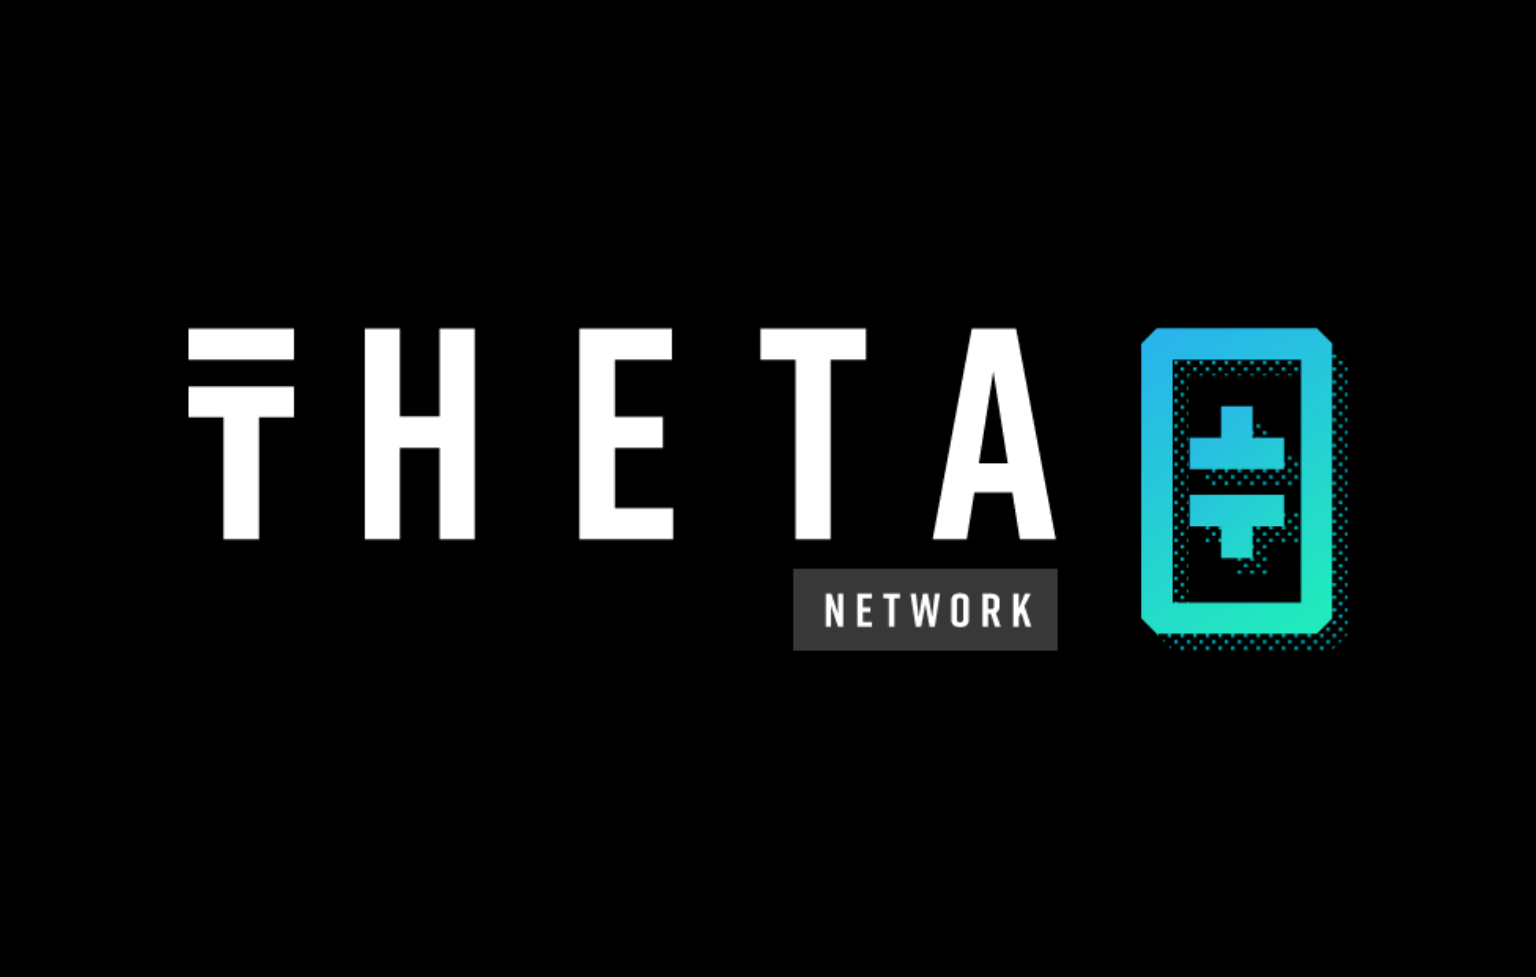 มาดูกันว่า Theta Network คืออะไร? เหรียญ THETA ใช้ทำอะไรบ้าง?